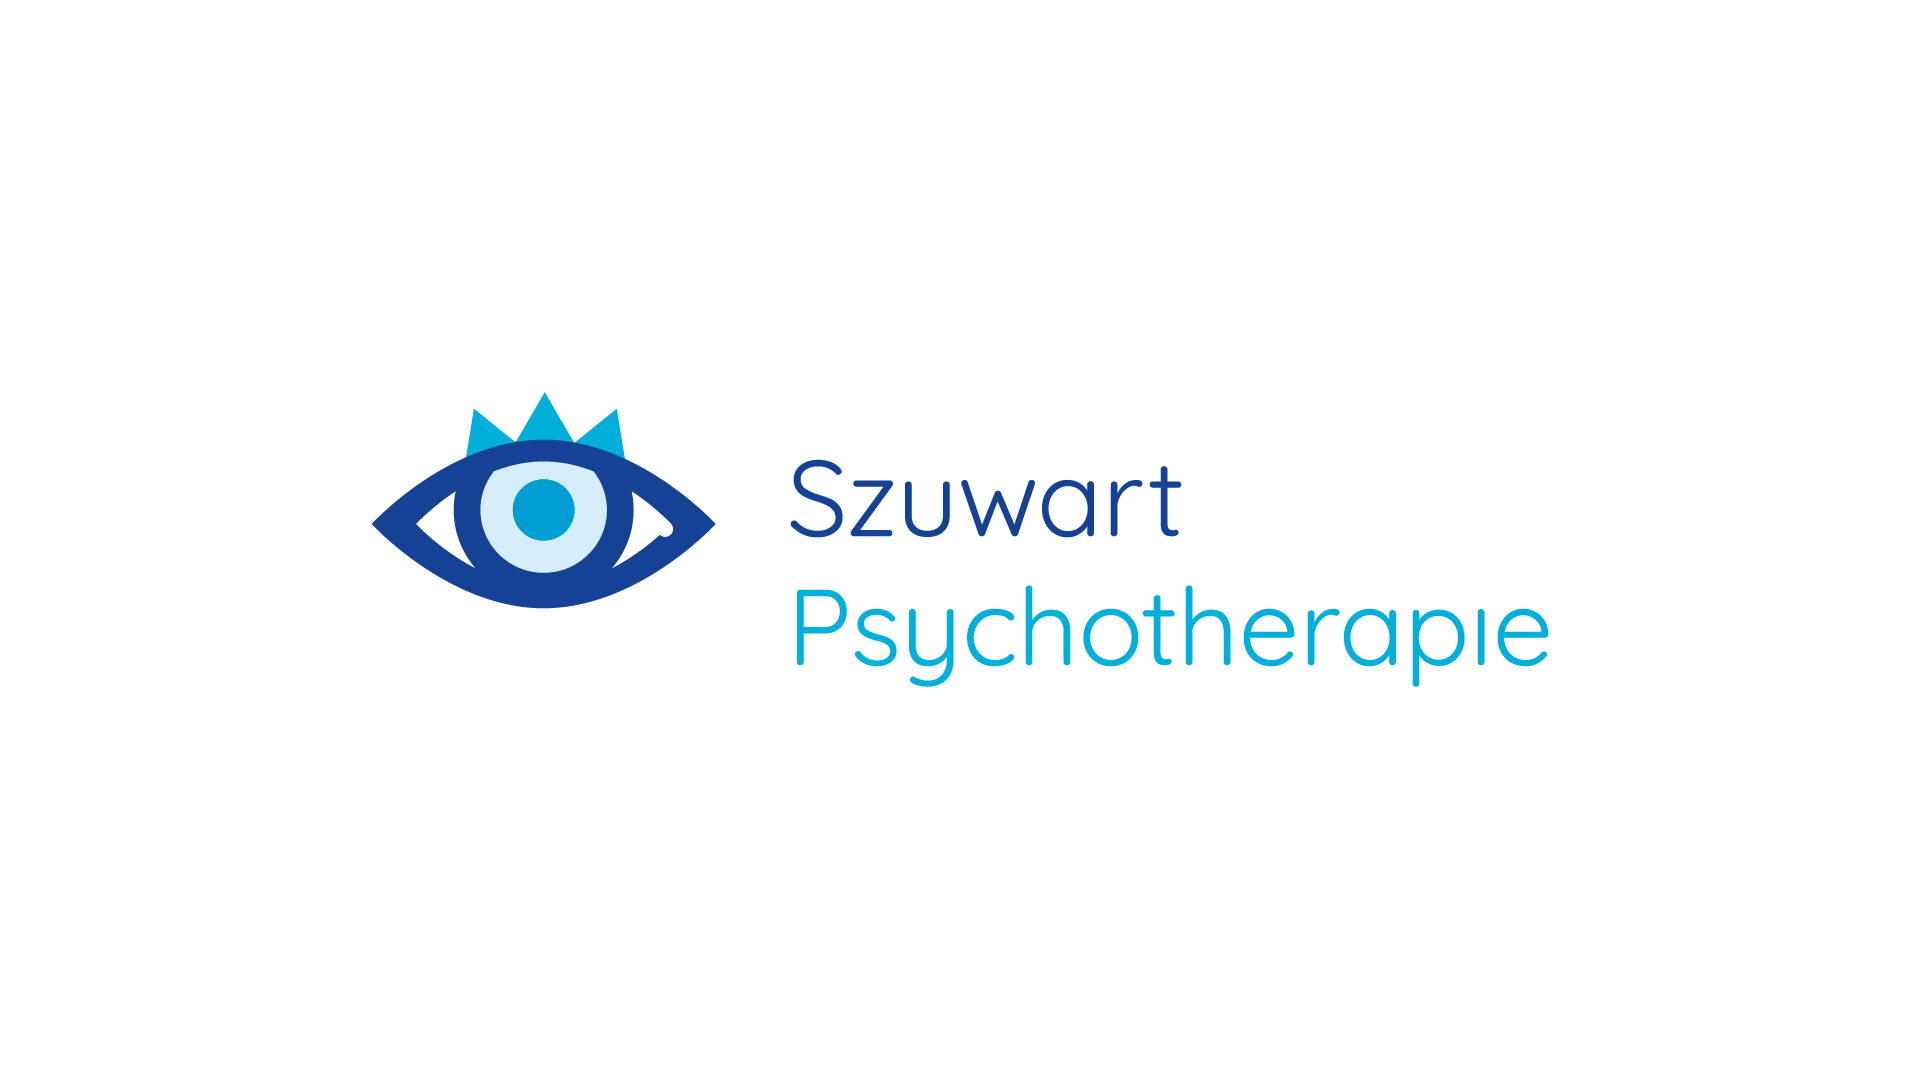 psychotherapie frankfurt tobias szuwart